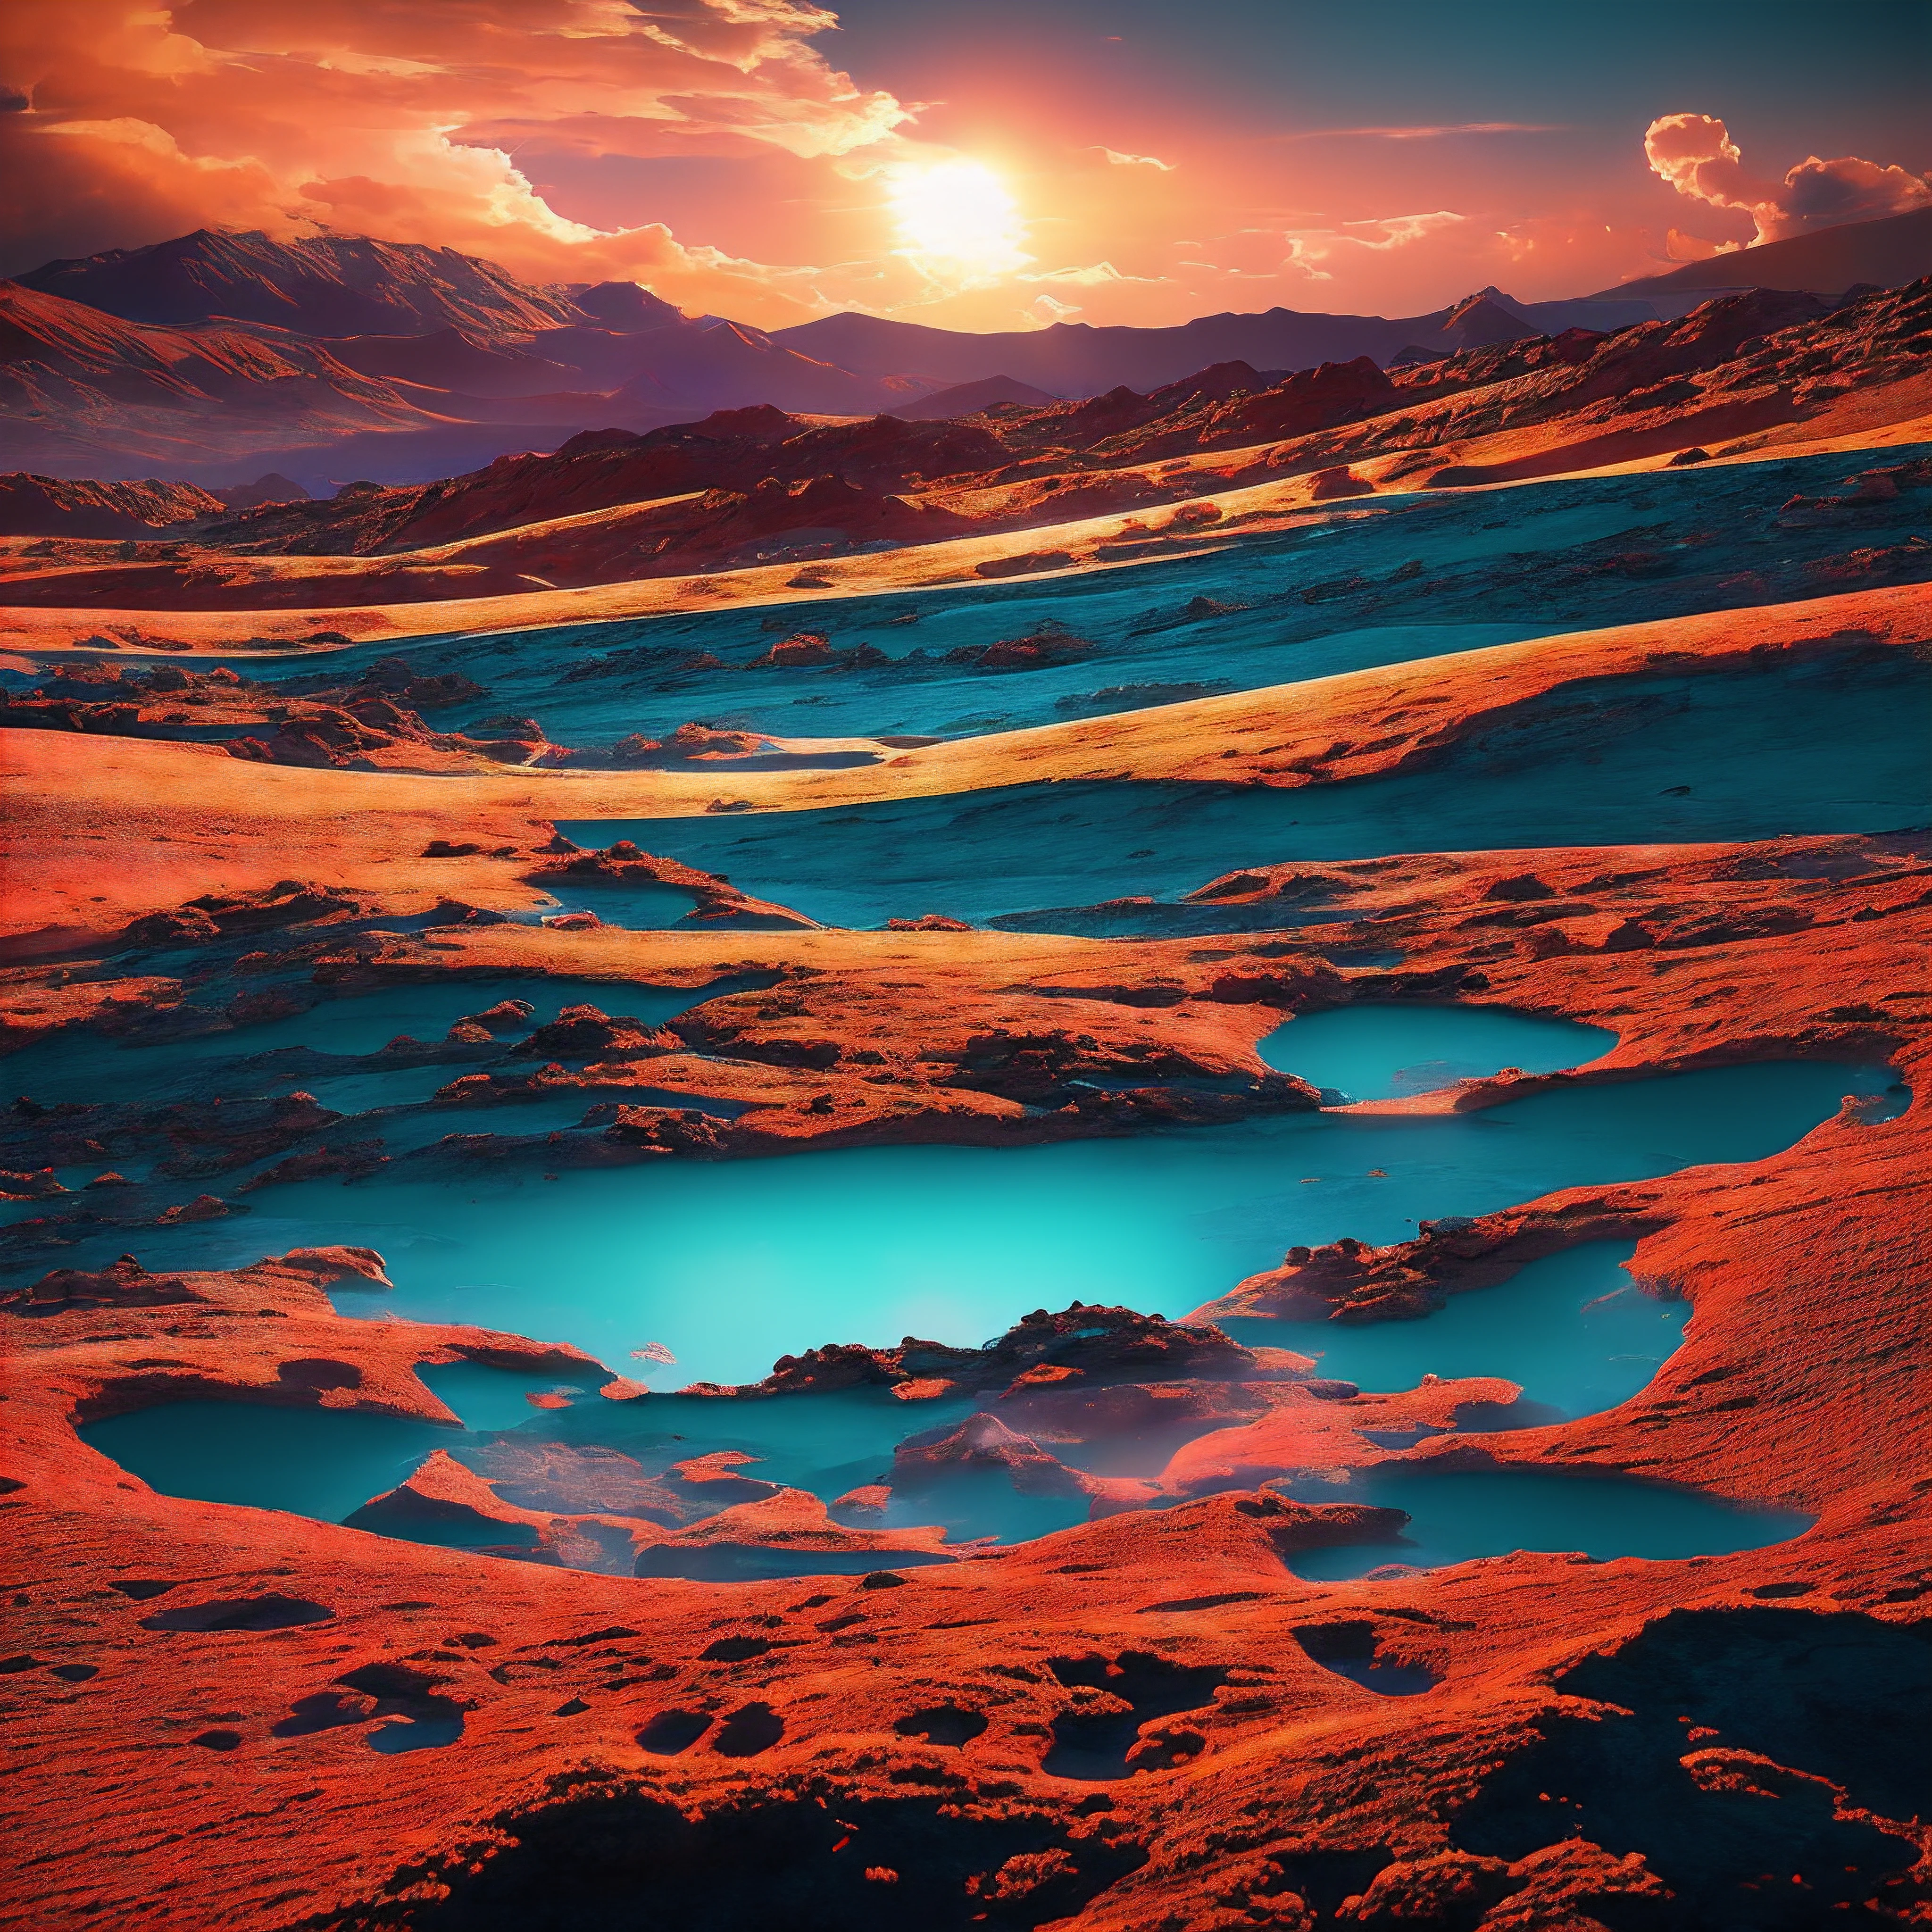 As dunas vermelhas de Marte se estendiam por quilômetros, banhado pela luz das duas luas penduradas no céu rosa. Espalhados pelo deserto, paisagem cor de ferrugem eram pedaços de geleiras geladas, brilhando intensamente à luz do sol. Relâmpagos crepitantes arqueavam-se descontroladamente através da fina atmosfera, deixando para trás o cheiro de ozônio.

Caminhando lentamente sobre o terreno estranho estava uma criatura curiosa. Tinha as características gentis de um cervo terrestre, com grandes olhos negros e nariz contorcido. Mas seu pelo estava tingido em tons de vermelho, laranja, azul, Verde e Violeta, quase imitando as nuvens de poeira cósmica próximas. Seus chifres se ramificando pareciam mais trepadeiras floridas do que ossos.

O cervo arco-íris vagou por florestas petrificadas trancadas em pedra, desfiladeiros gelados verde-azulado brilhante, e lagoas borbulhantes de líquido preto brilhante. Ele se alimentava de líquenes luminosos que cresciam nas paredes do cânion e bebia dos riachos leitosos e brilhantes.. À distância, vulcões lançaram brasas brilhantes no céu sob a luz de três luas sobrepostas.

A paisagem estava em constante mudança, com redemoinhos uivantes dando lugar a gêiseres enevoados irrompendo aleatoriamente do solo rochoso. No entanto, o cervo arco-íris não percebeu, explorando serenamente este mundo alienígena que agora o abrigava. Suas cores prismáticas destacavam-se intensamente contra as rochas vermelhas sem vida e a areia ocre. Um arco-íris vivo em um mundo distante.